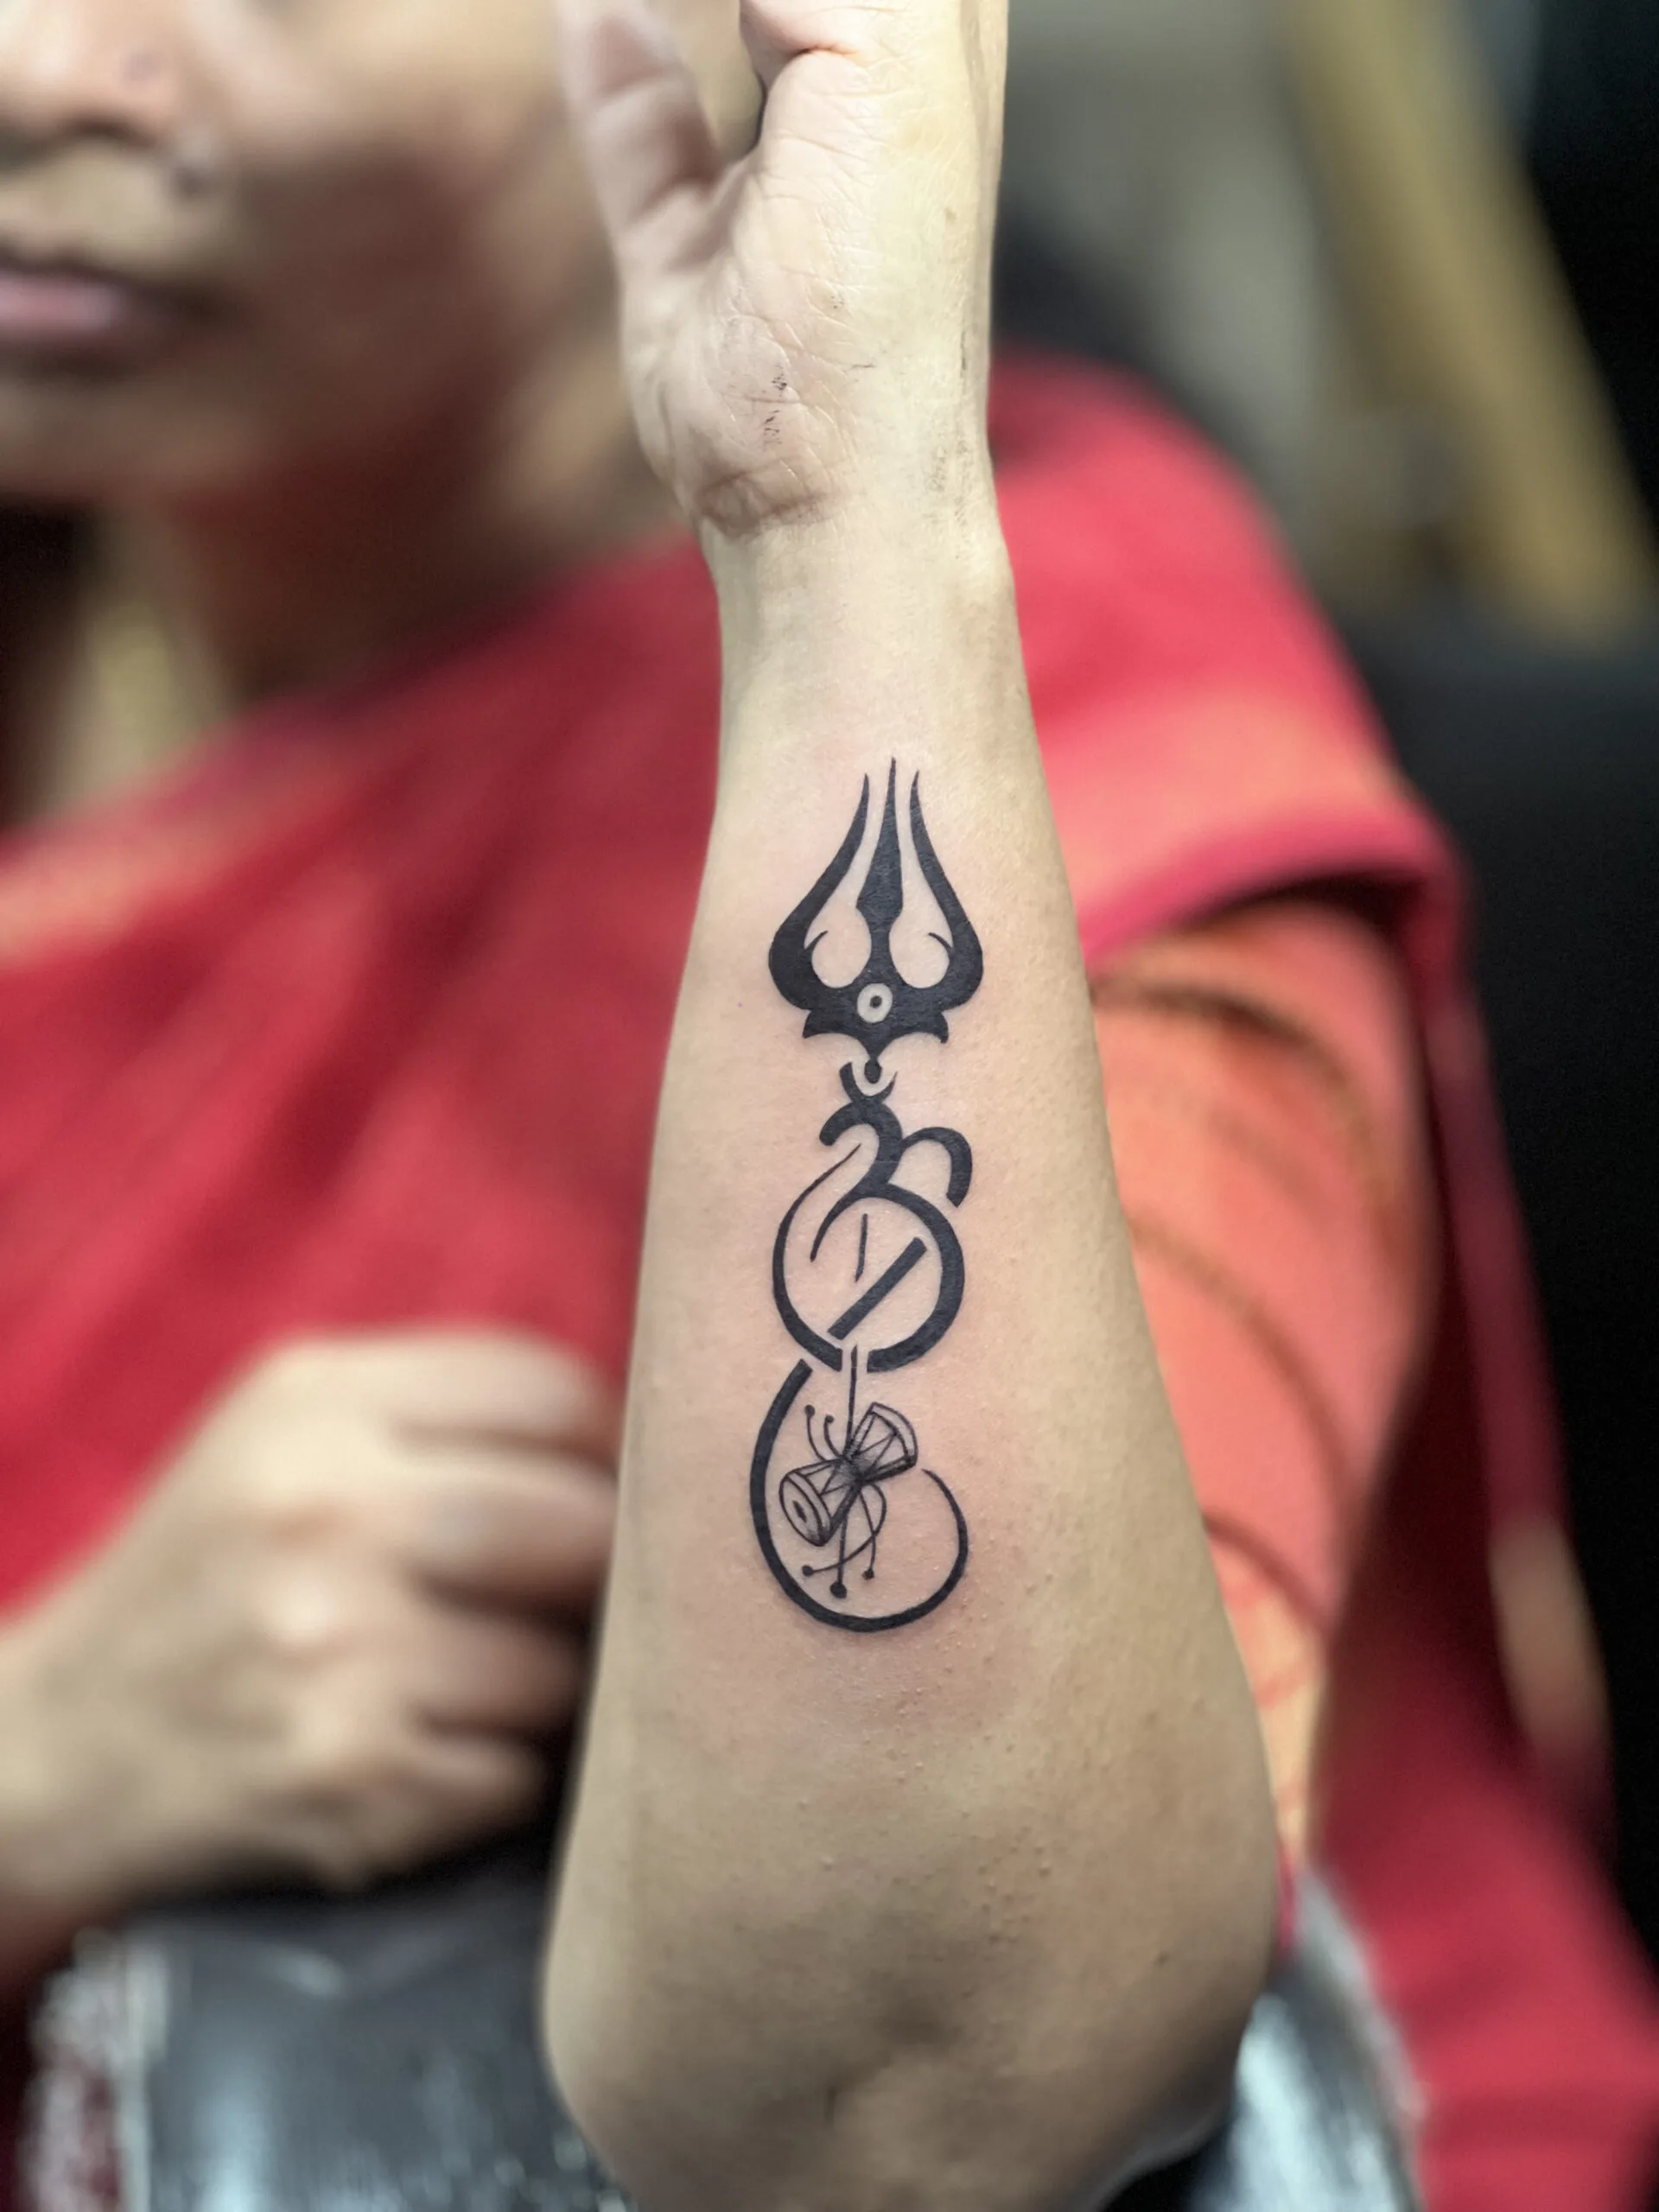 Mahadev Eye of Shiva Tattoo Waterproof For Girls and Boys Temporary Bo –  Temporarytattoowala